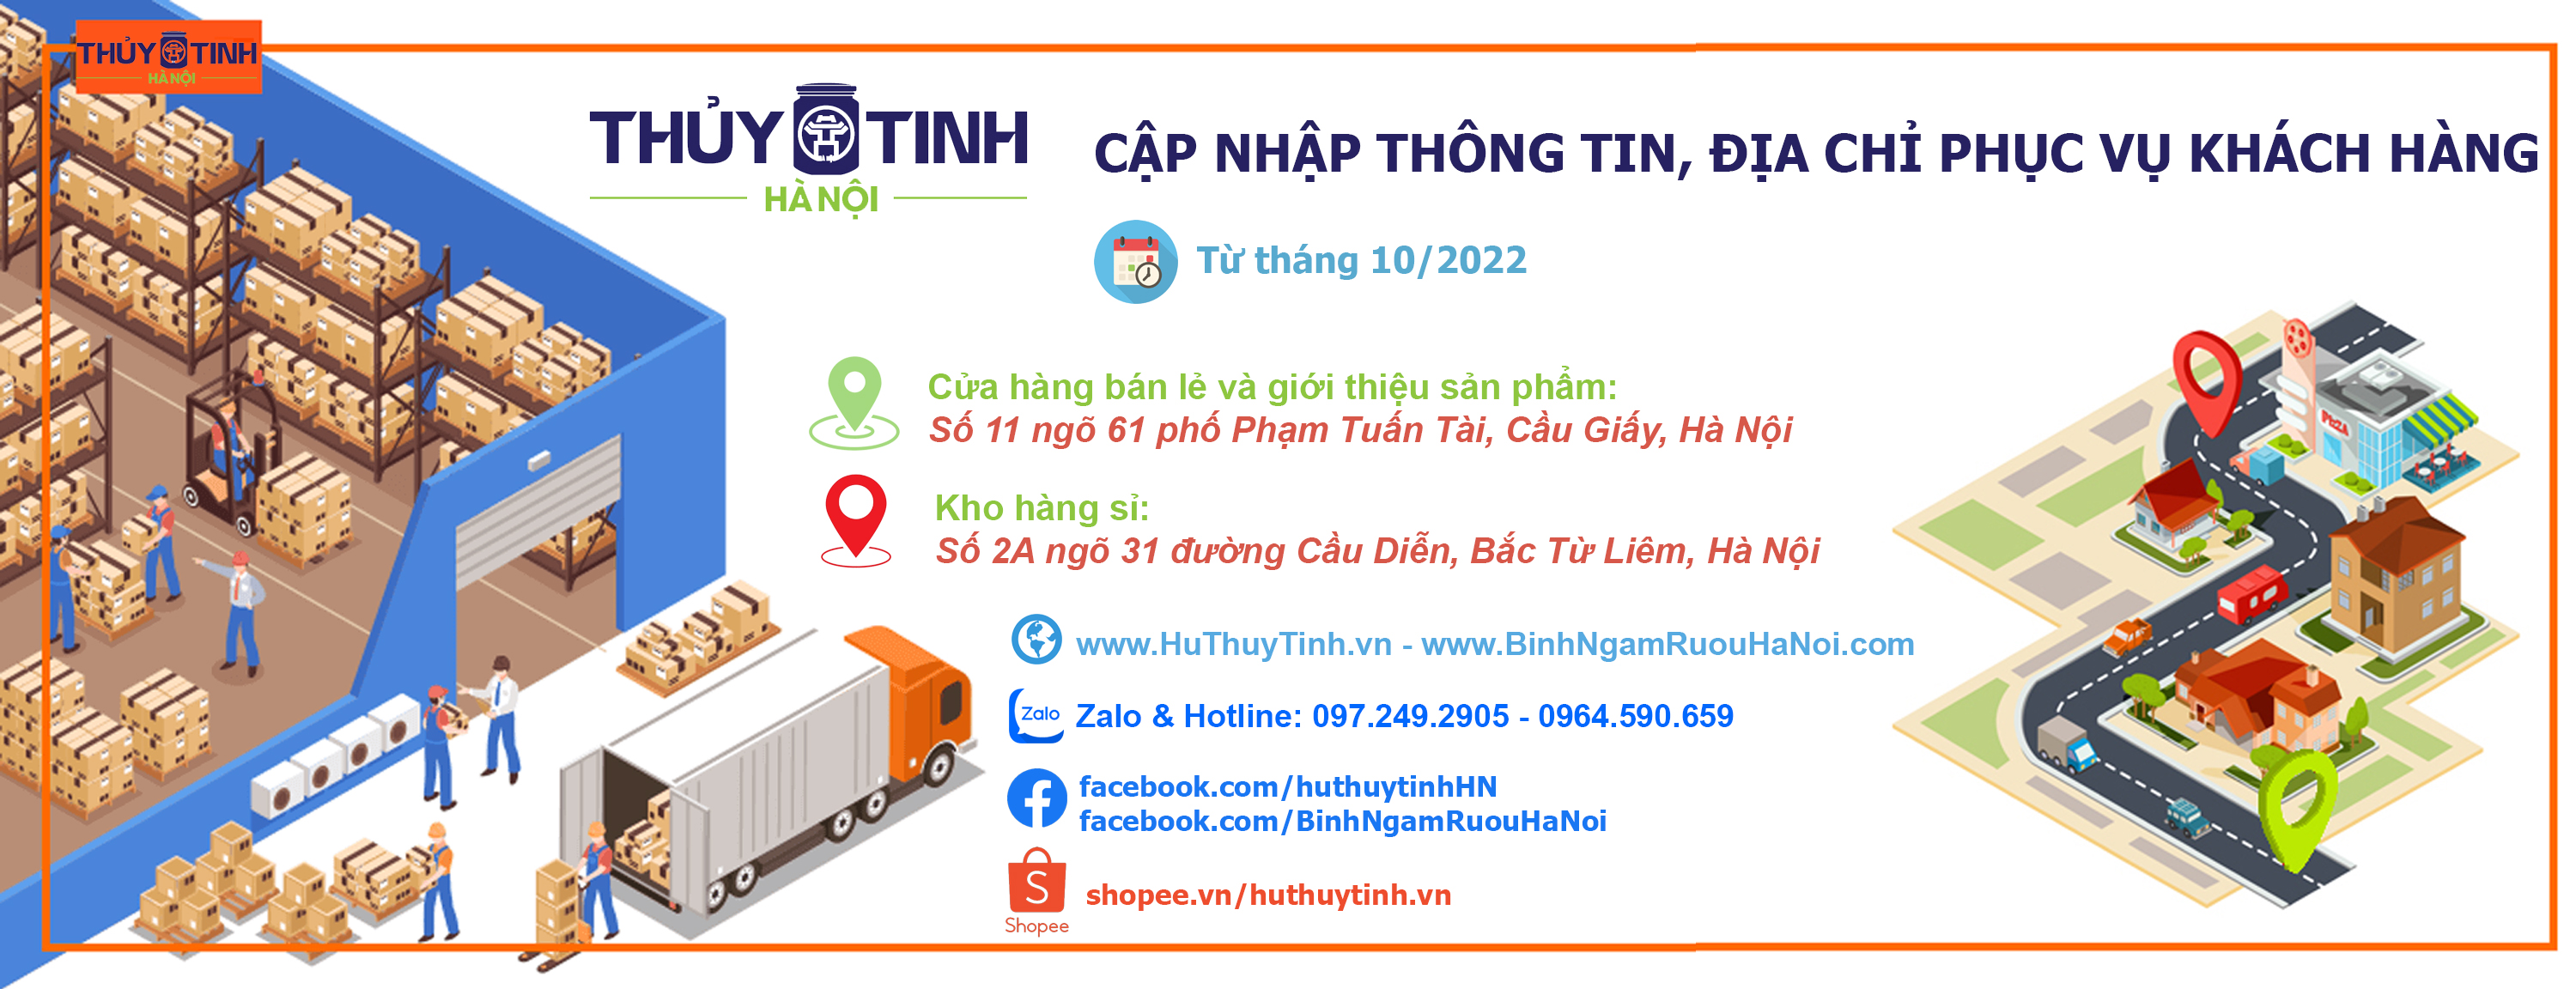 Công ty TNHH Thủy tinh Hà Nội